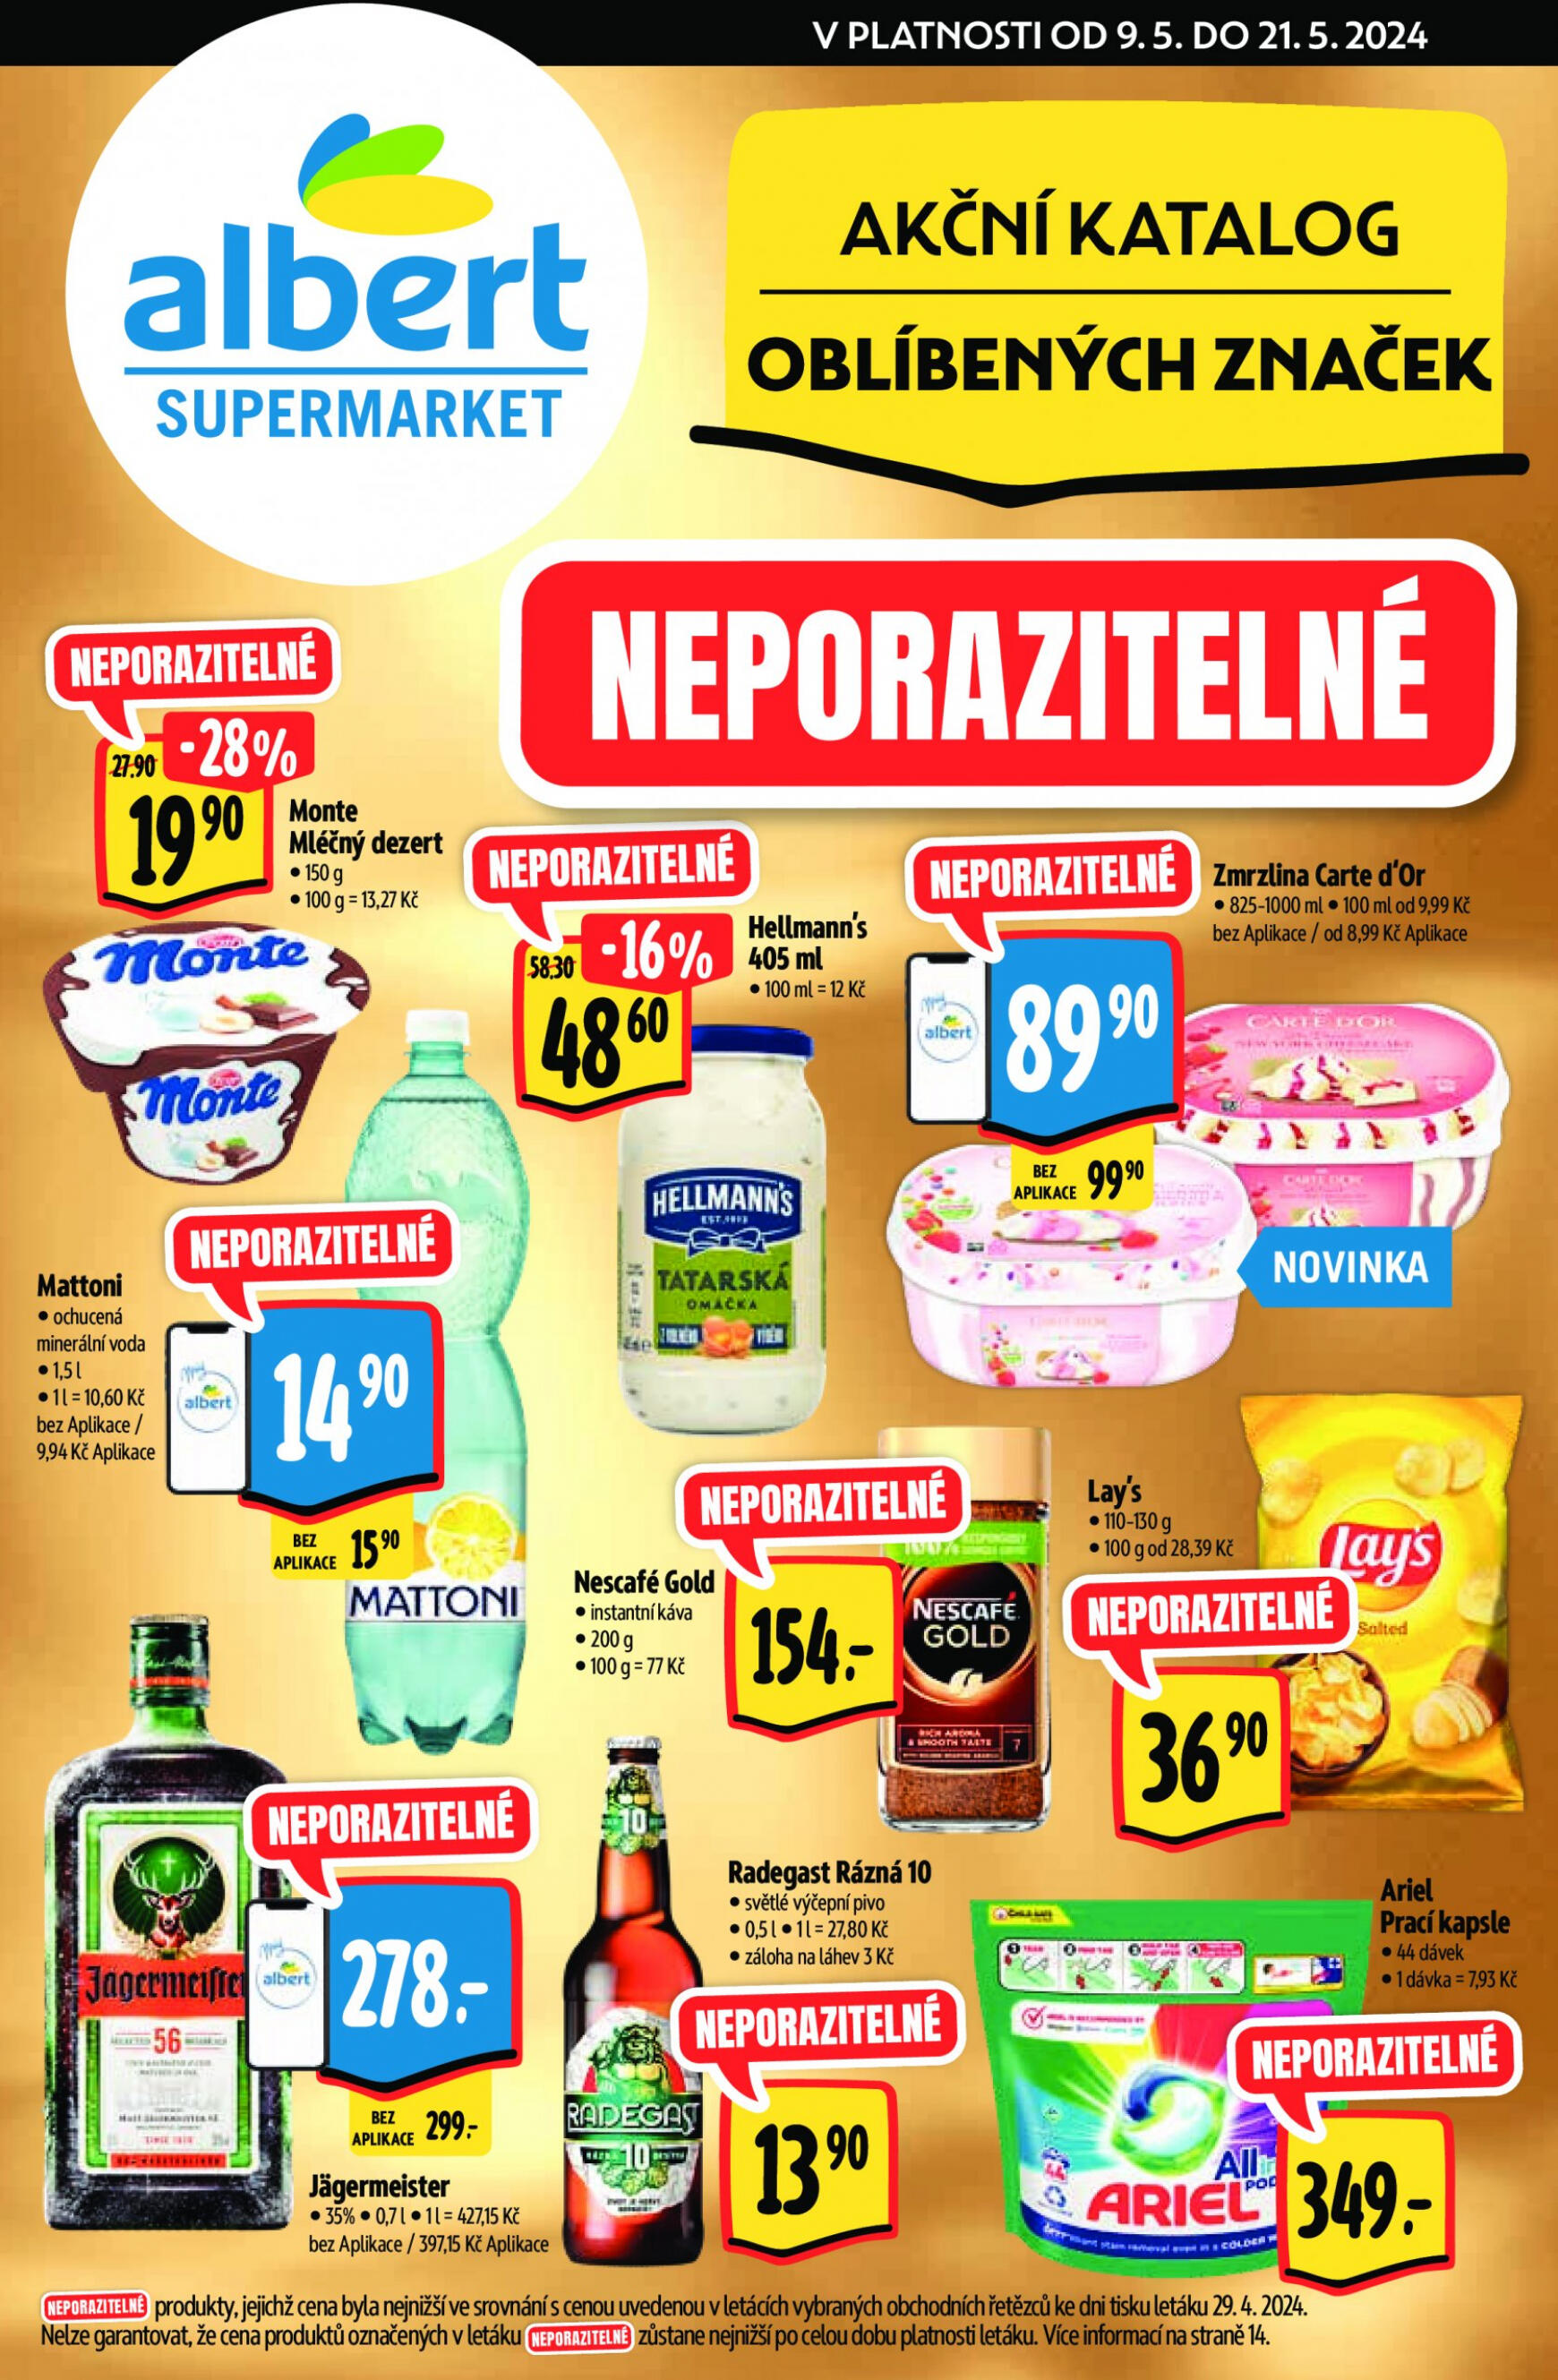 albert - Leták Albert Supermarket - Katalog oblíbených značek aktuální 09.05. - 21.05. - page: 1